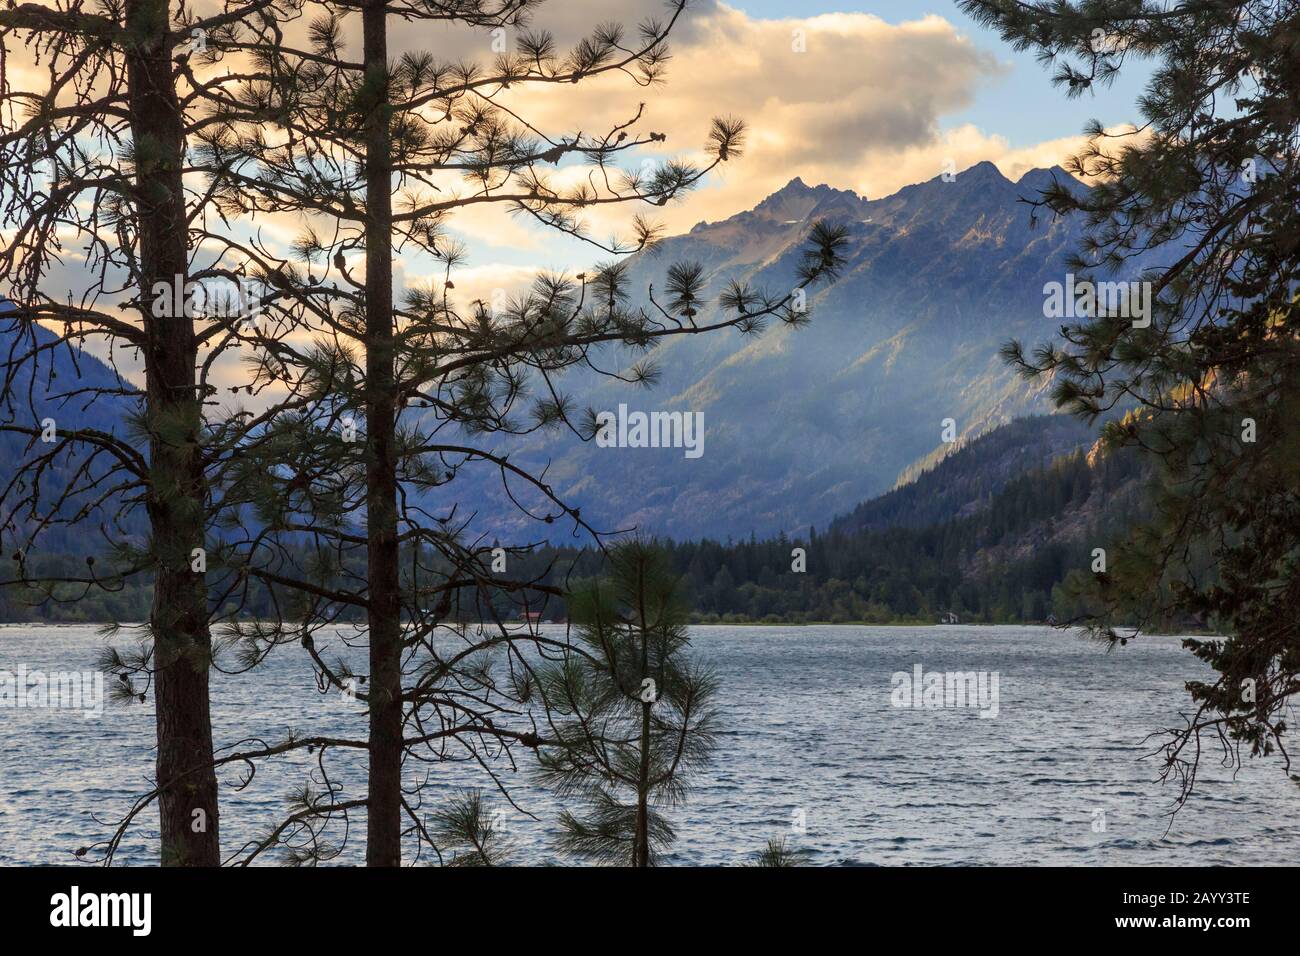 Stehekin, Chelan County, Washington, Stati Uniti, sul lago Chelan a sud del North Cascade National Park.. Foto Stock